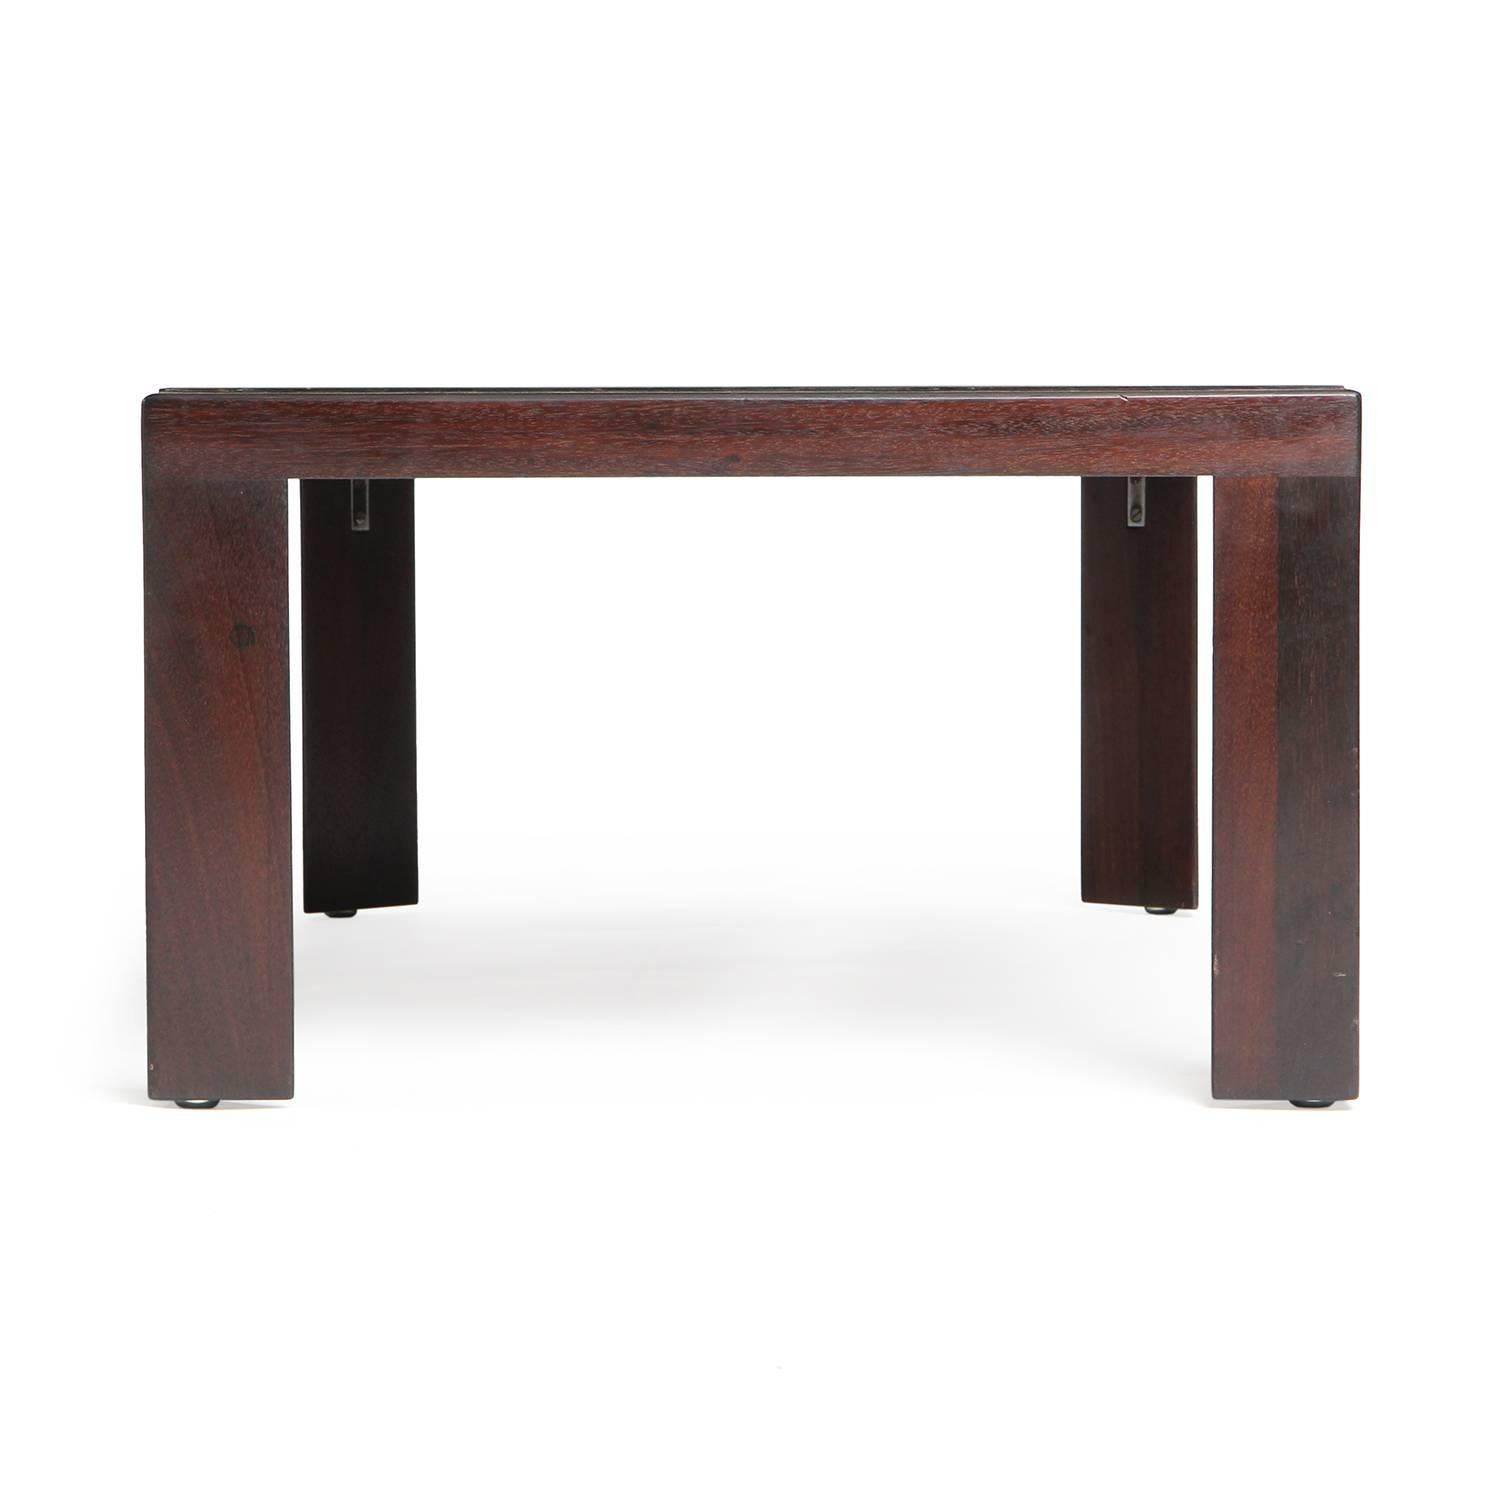 Ein rechteckiger niedriger Tisch aus dunklem Nussbaumholz mit einer schwarzen Laminatplatte und charakteristischen dreieckigen Beinen.